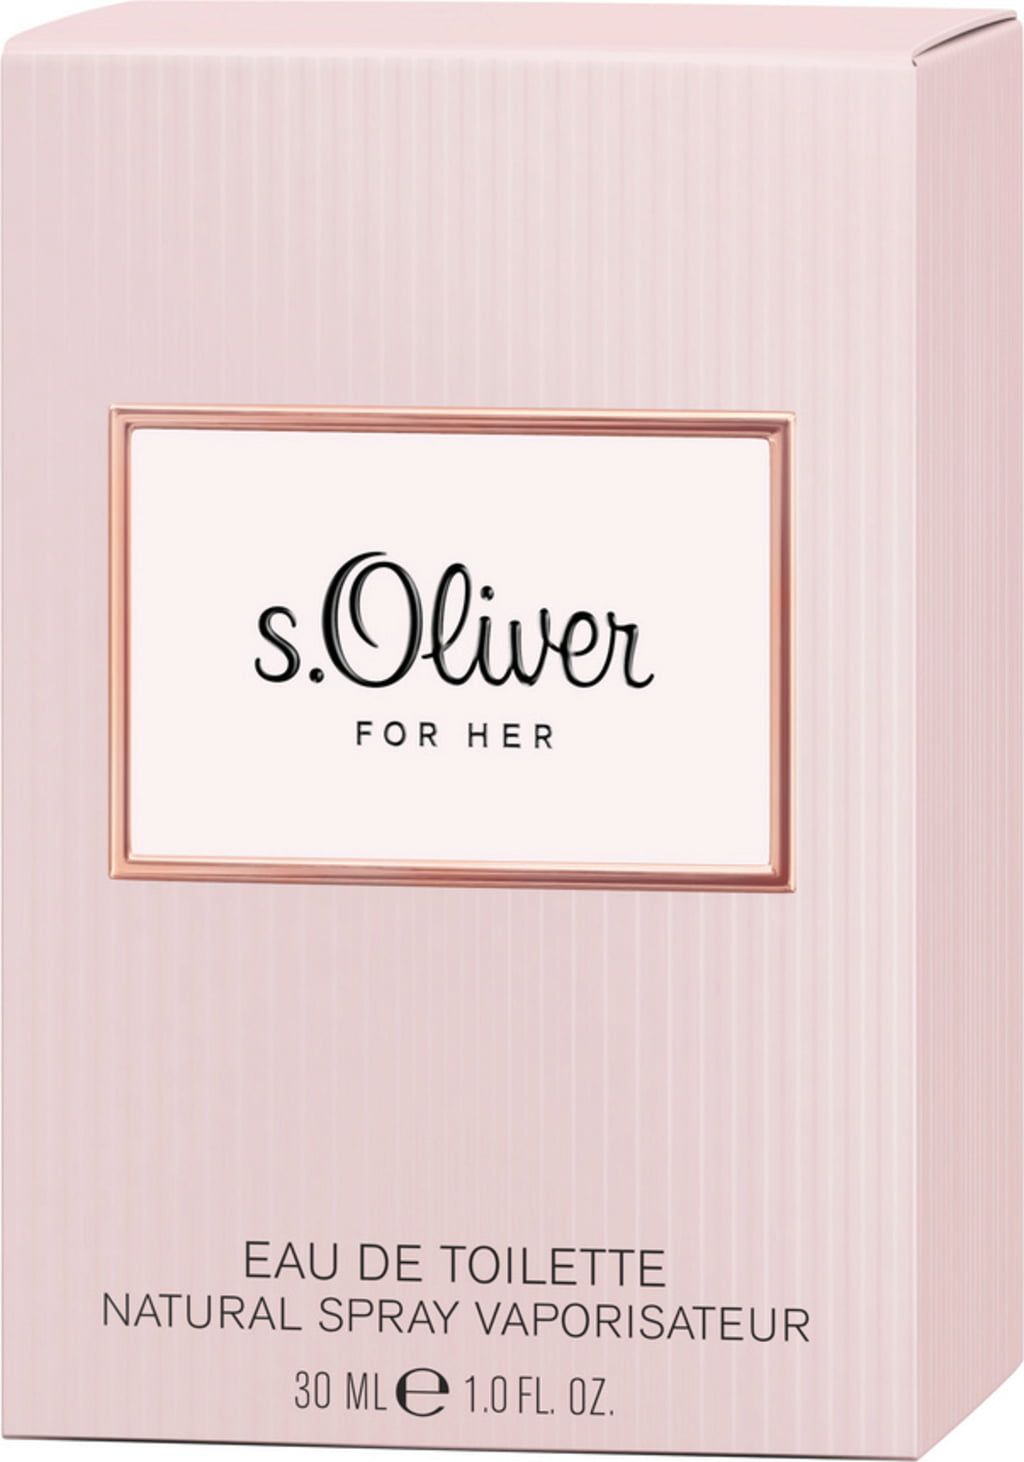 S.Oliver For Her Eau de Toilette